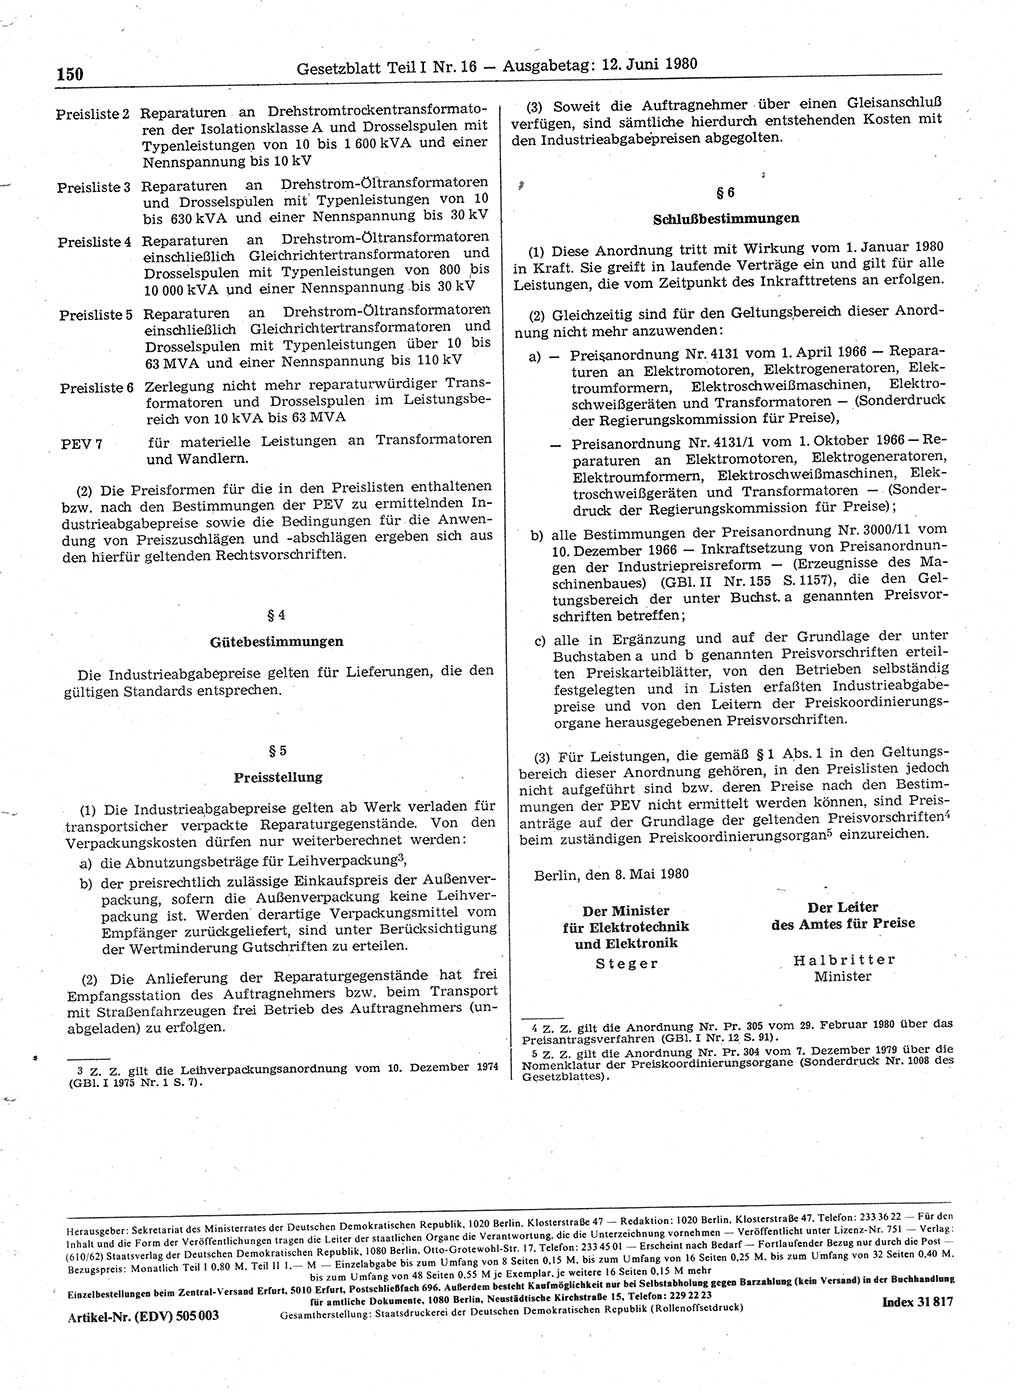 Gesetzblatt (GBl.) der Deutschen Demokratischen Republik (DDR) Teil Ⅰ 1980, Seite 150 (GBl. DDR Ⅰ 1980, S. 150)